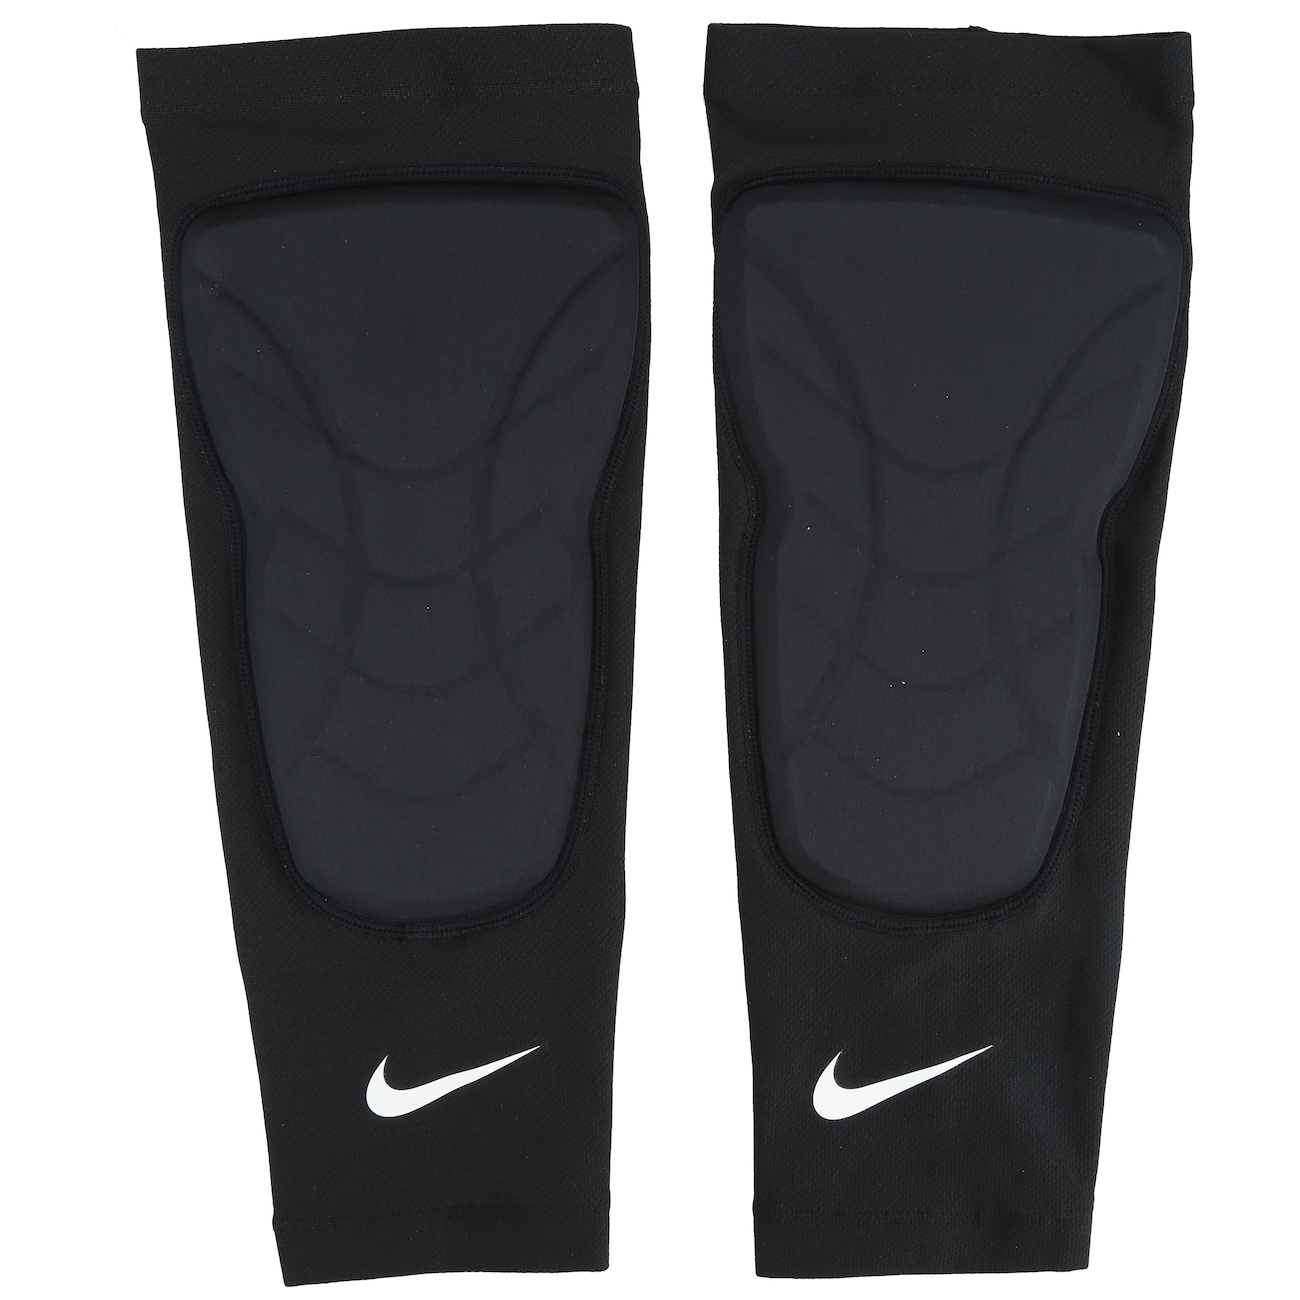 Caneleira de Basquete Nike Hyperstrong Padded Shin Sleeves